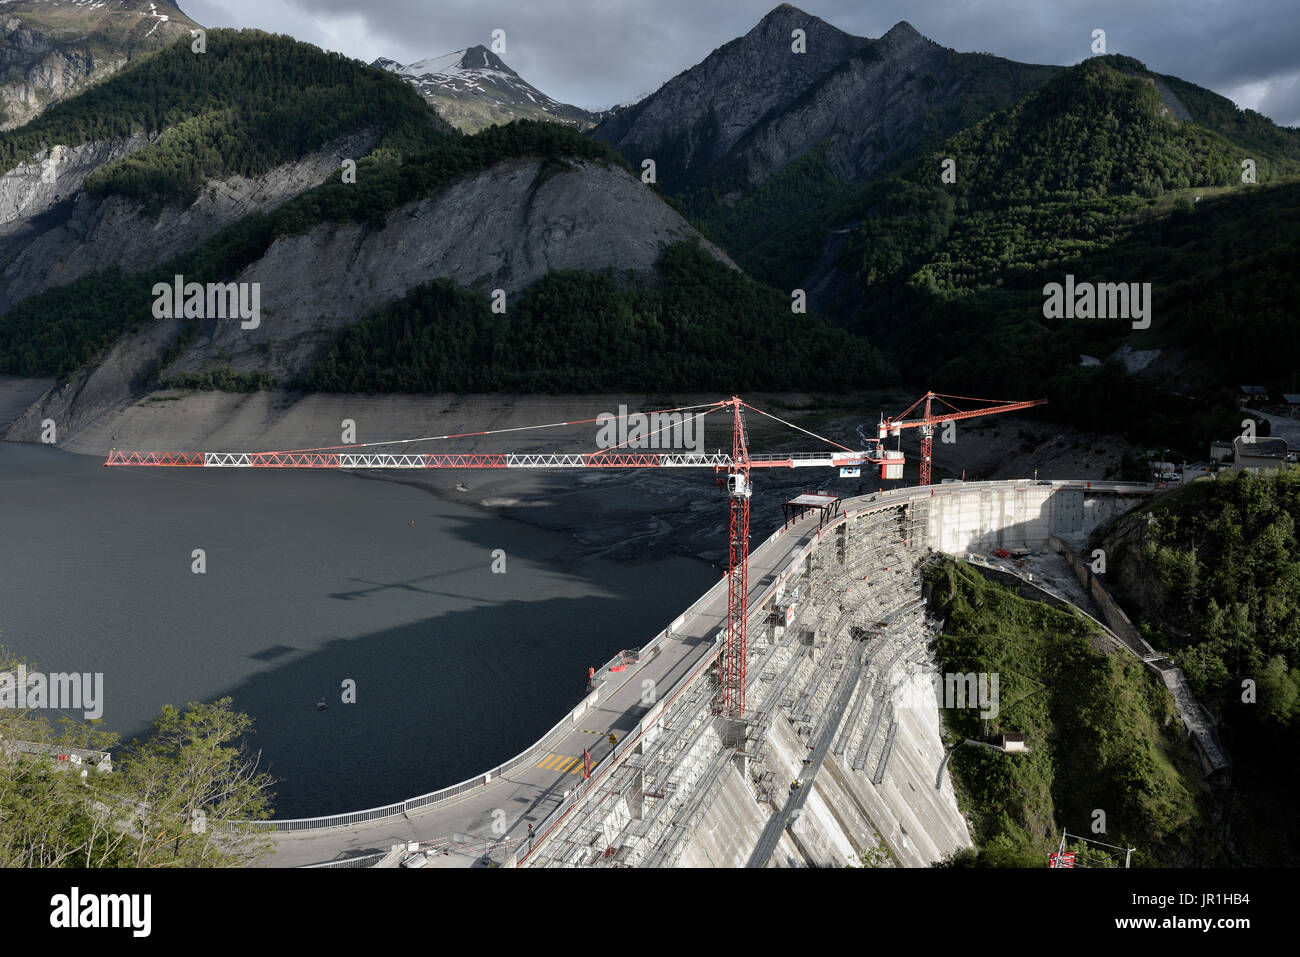 Les travaux sur le renforcement du barrage de Chambon, en 2014. Les travaux de consolidation permettent de traiter 3 problèmes observés sur le barrage, causée principalement par le phénomène d'alcali-réaction. Alpes, France Banque D'Images